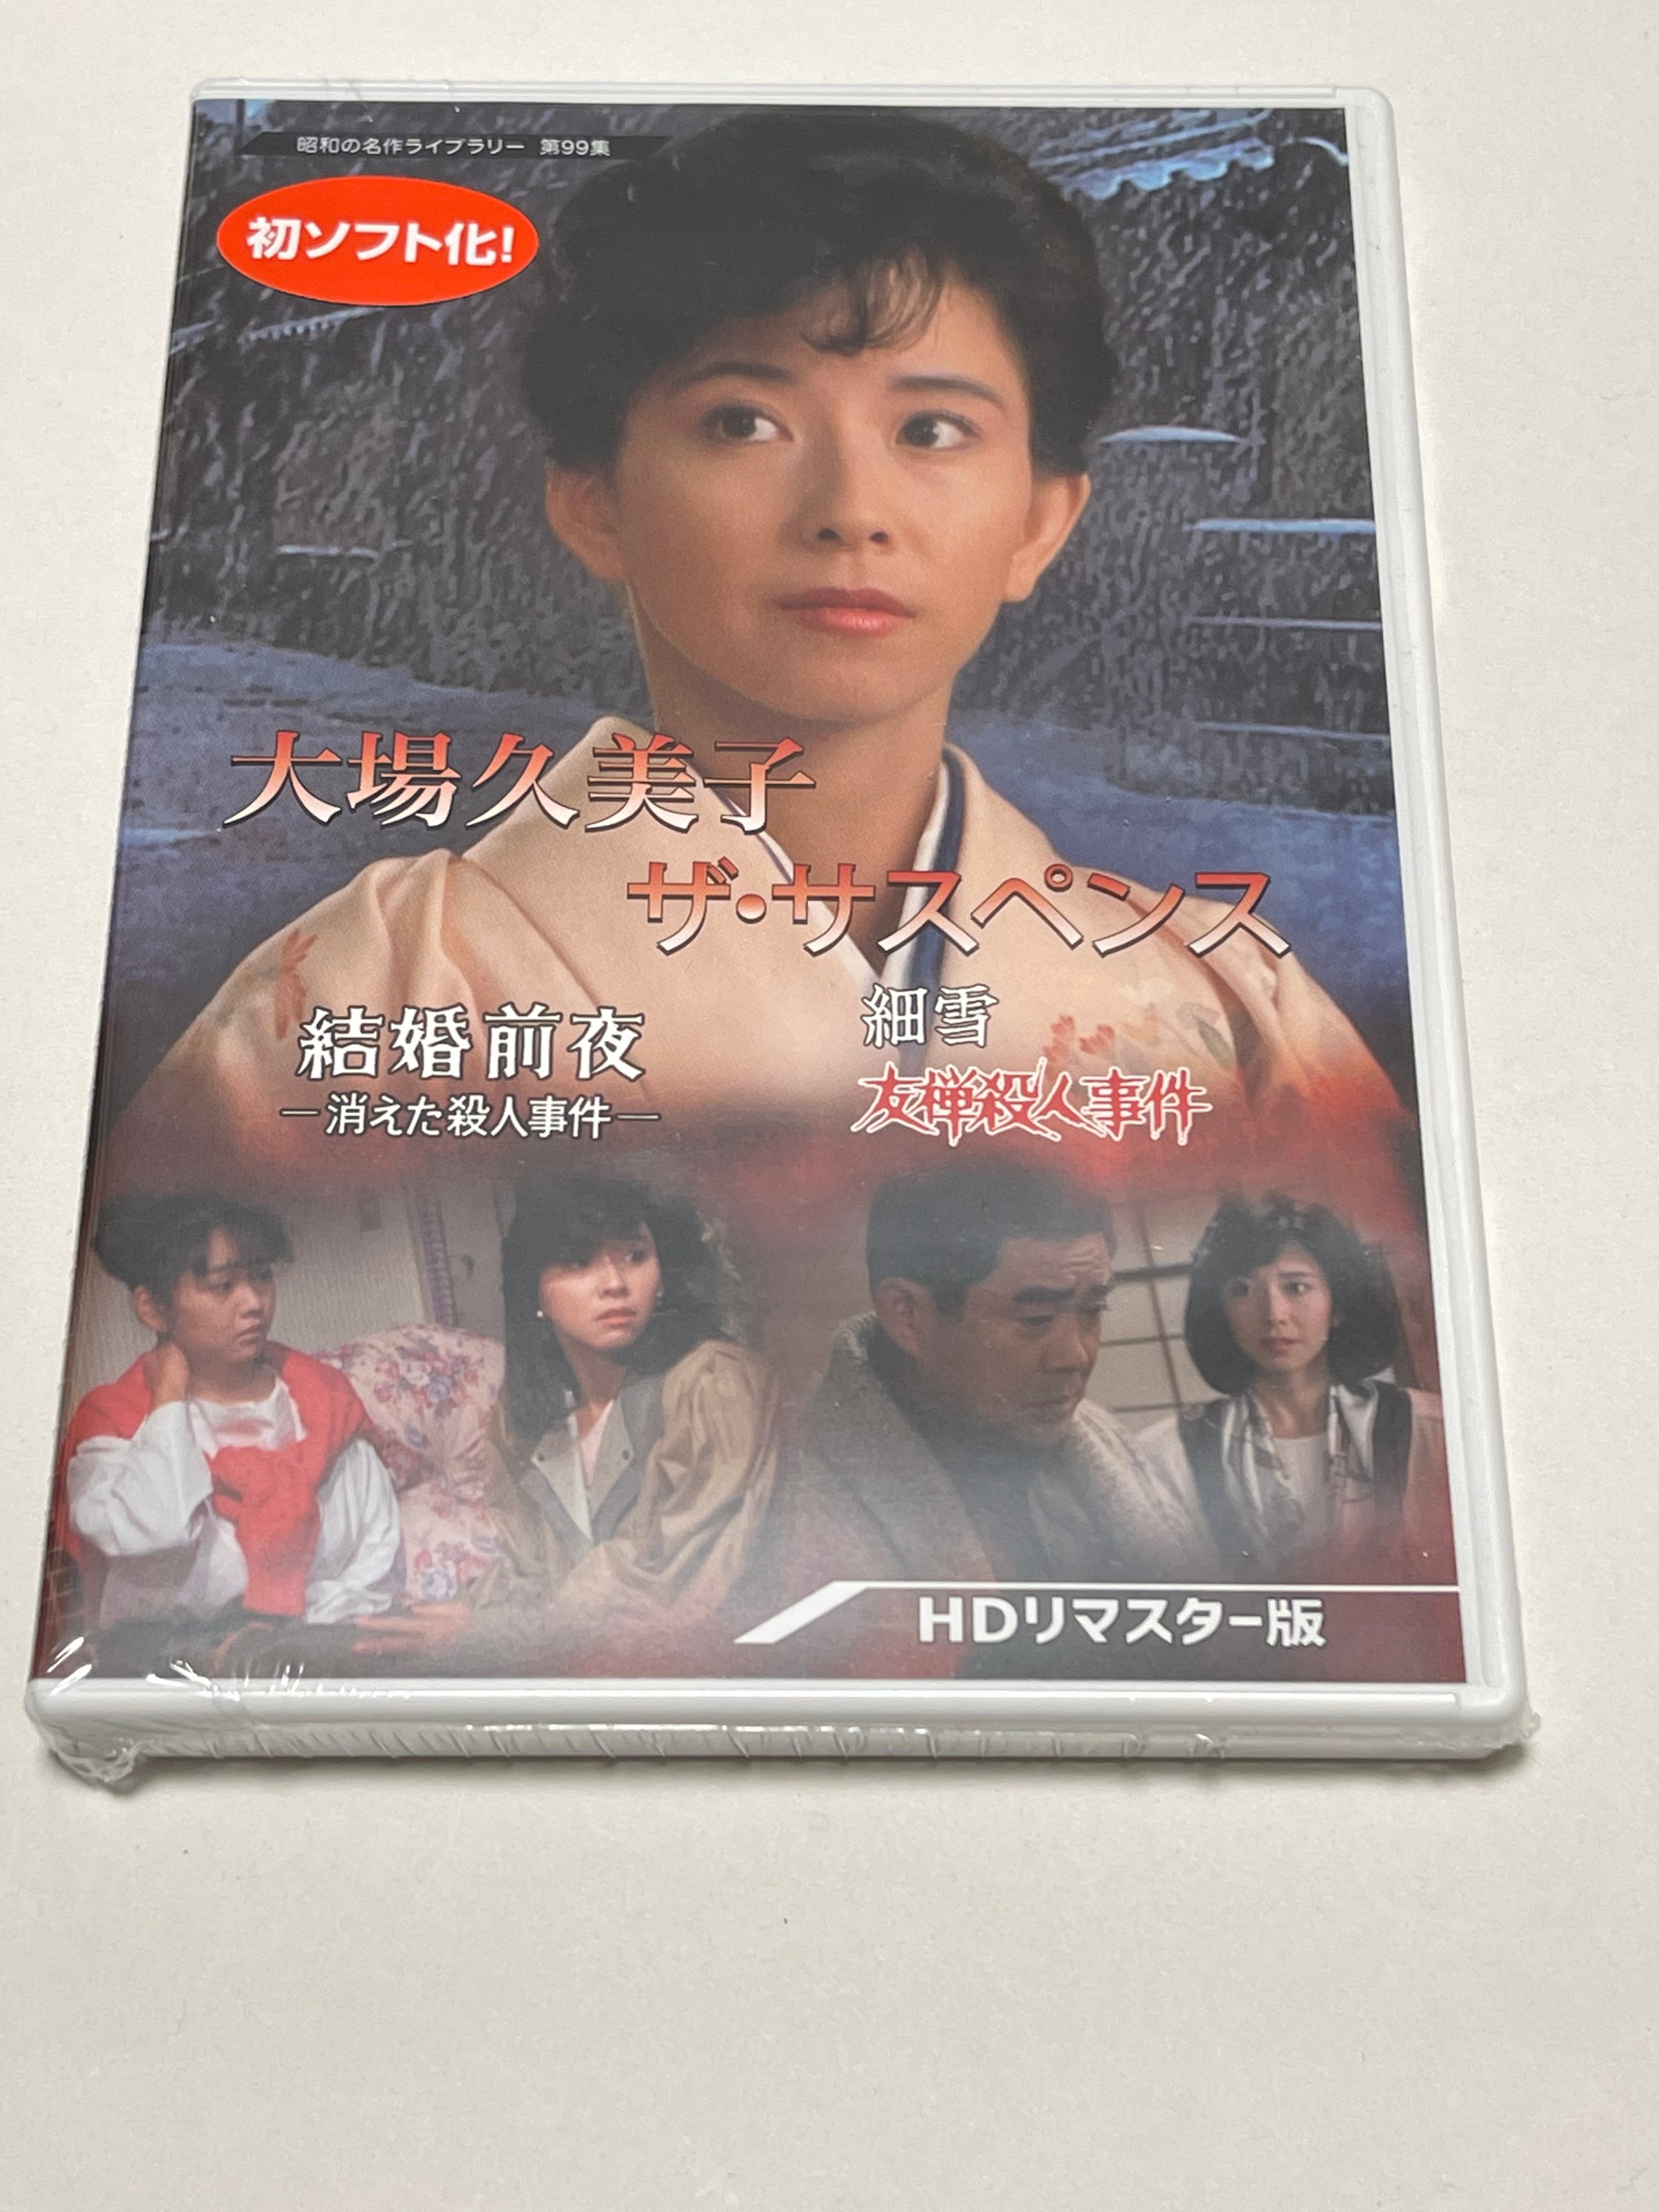 マーケット 大場久美子 DVD ザ サスペンス